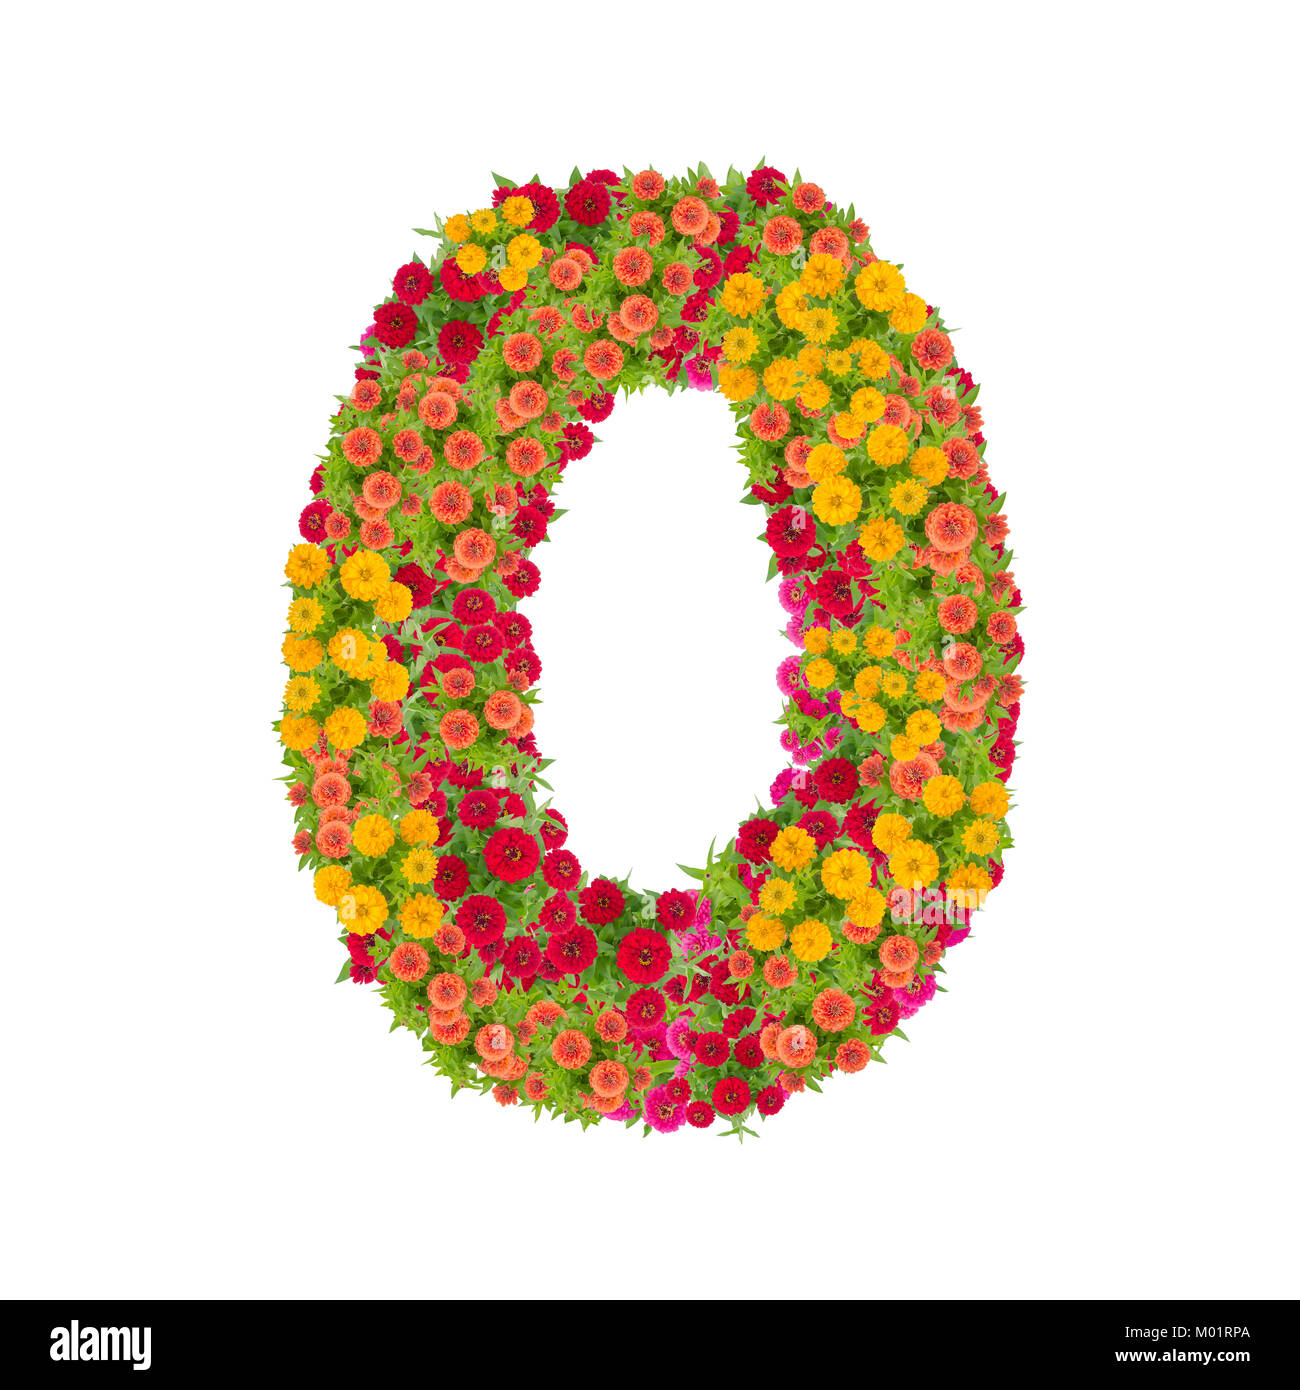 Nummer 0 von zinnien Blumen auf weißem Hintergrund gemacht. Farbenfrohe zinnia Blume in Nummer 0 Form mit Freistellungspfad Stockfoto